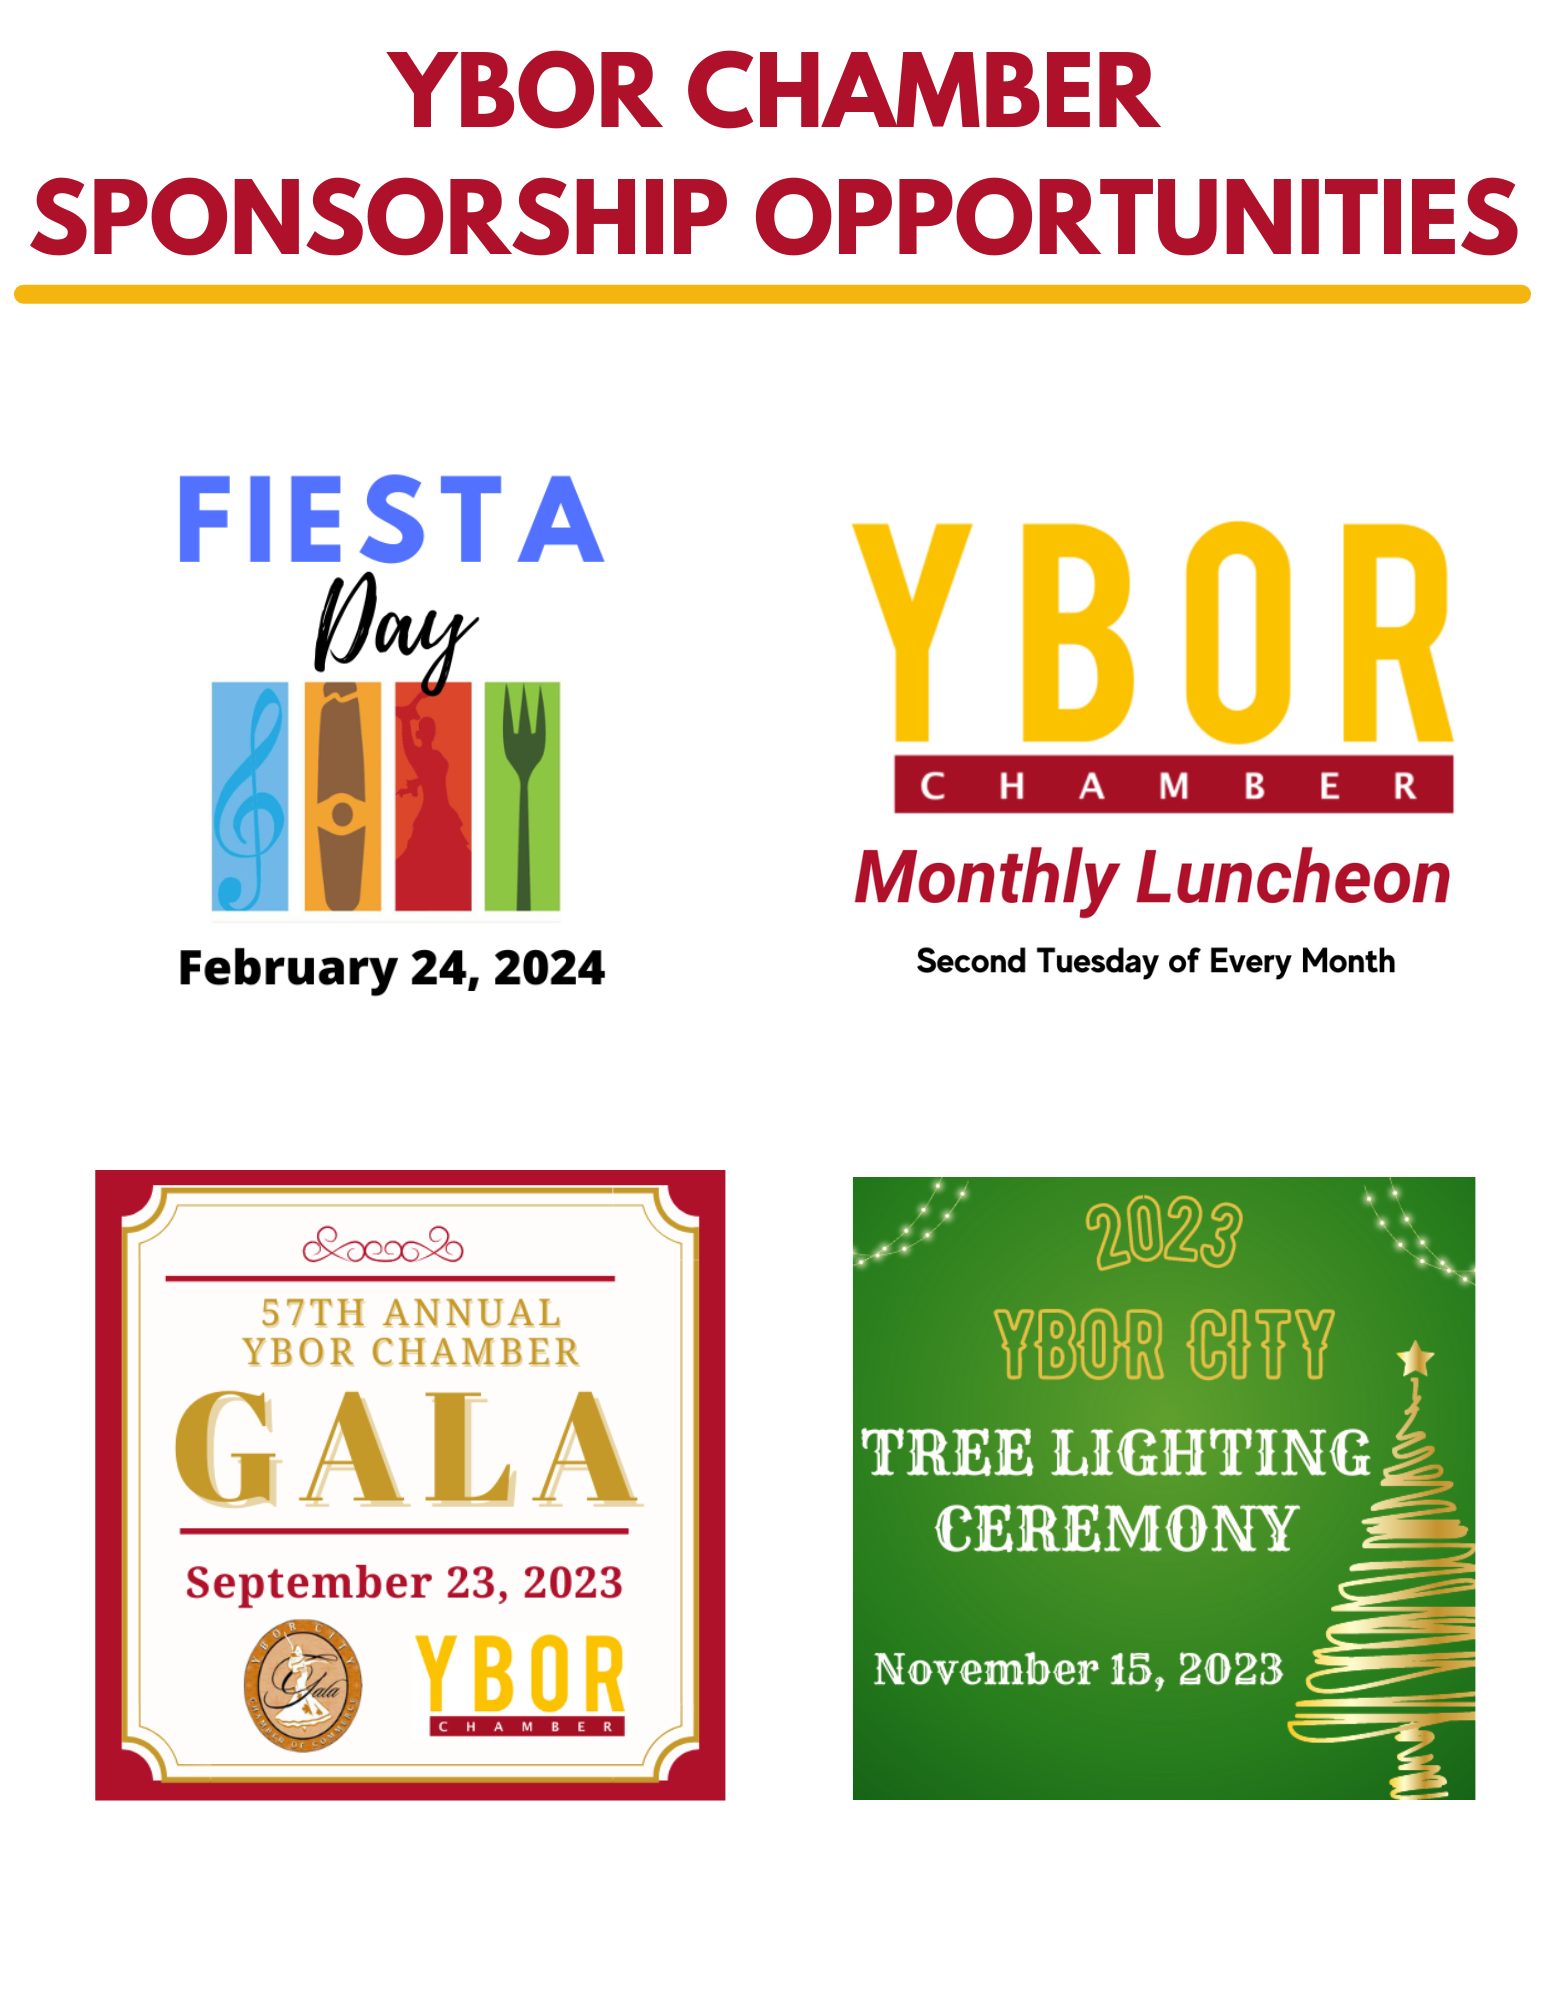 Ybor Chamber Sponsorship Opportunities 2-28-23